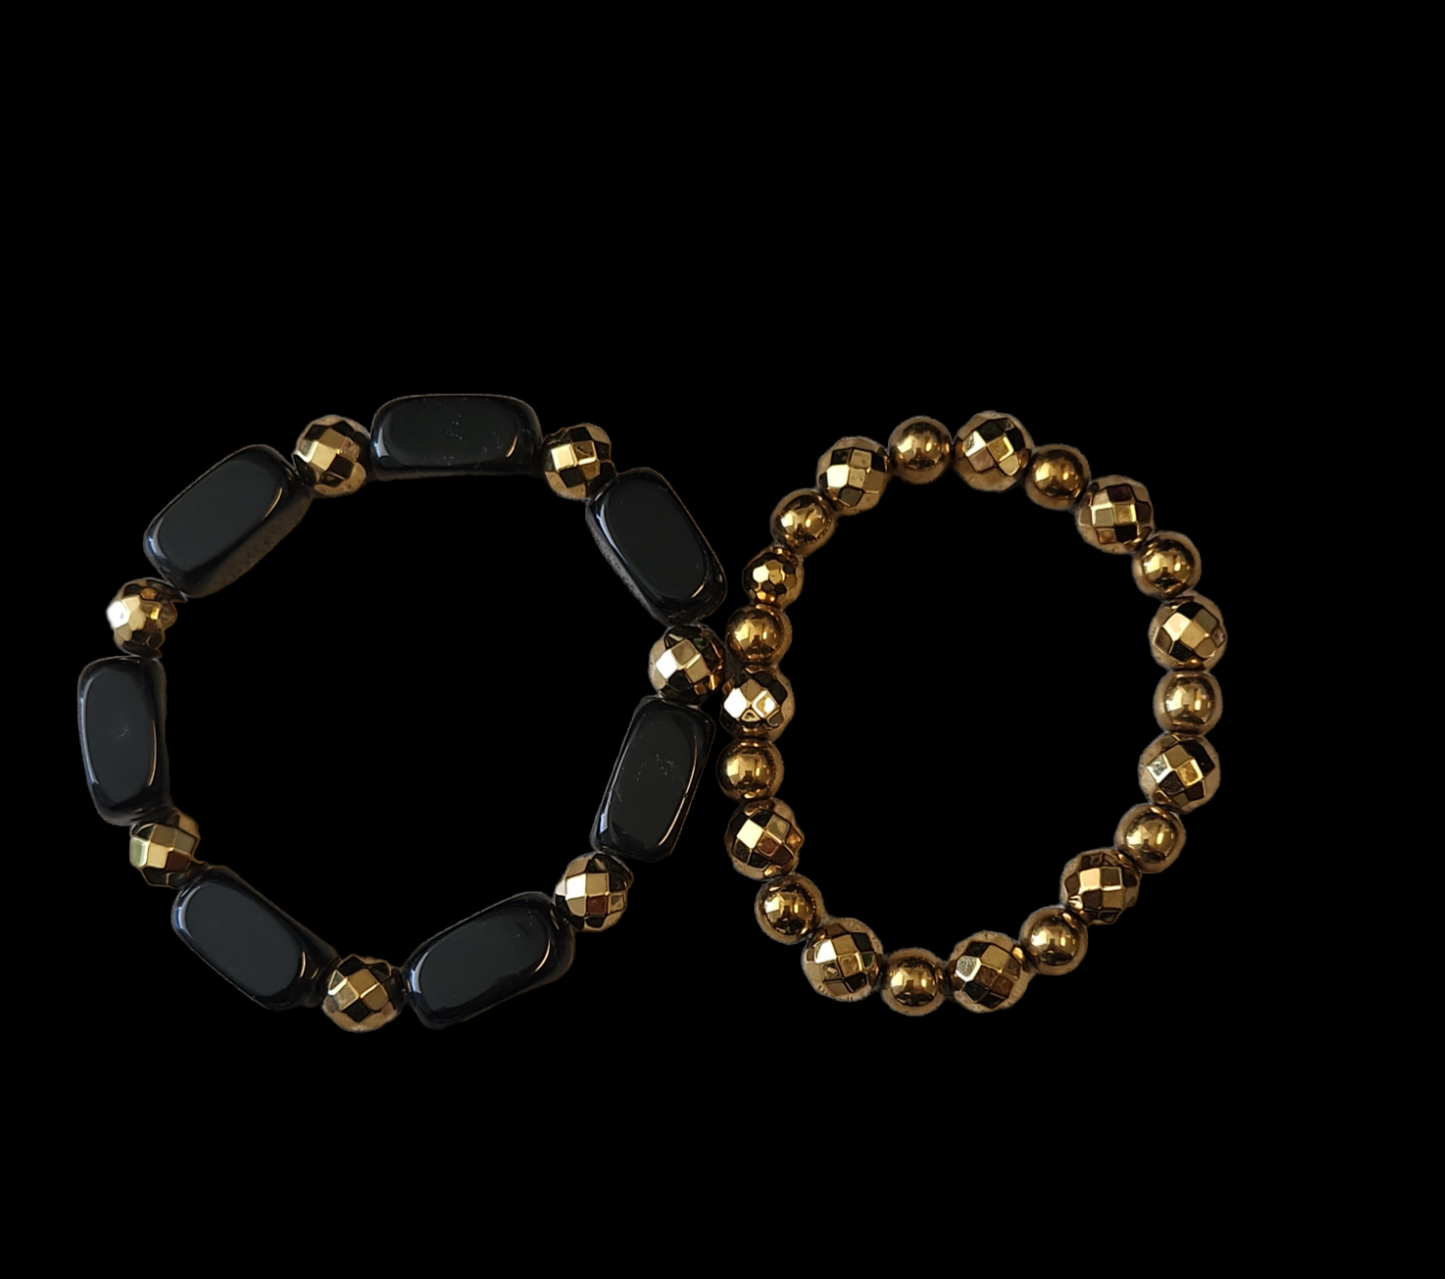 Onyx and gold coated hematite bracelet set